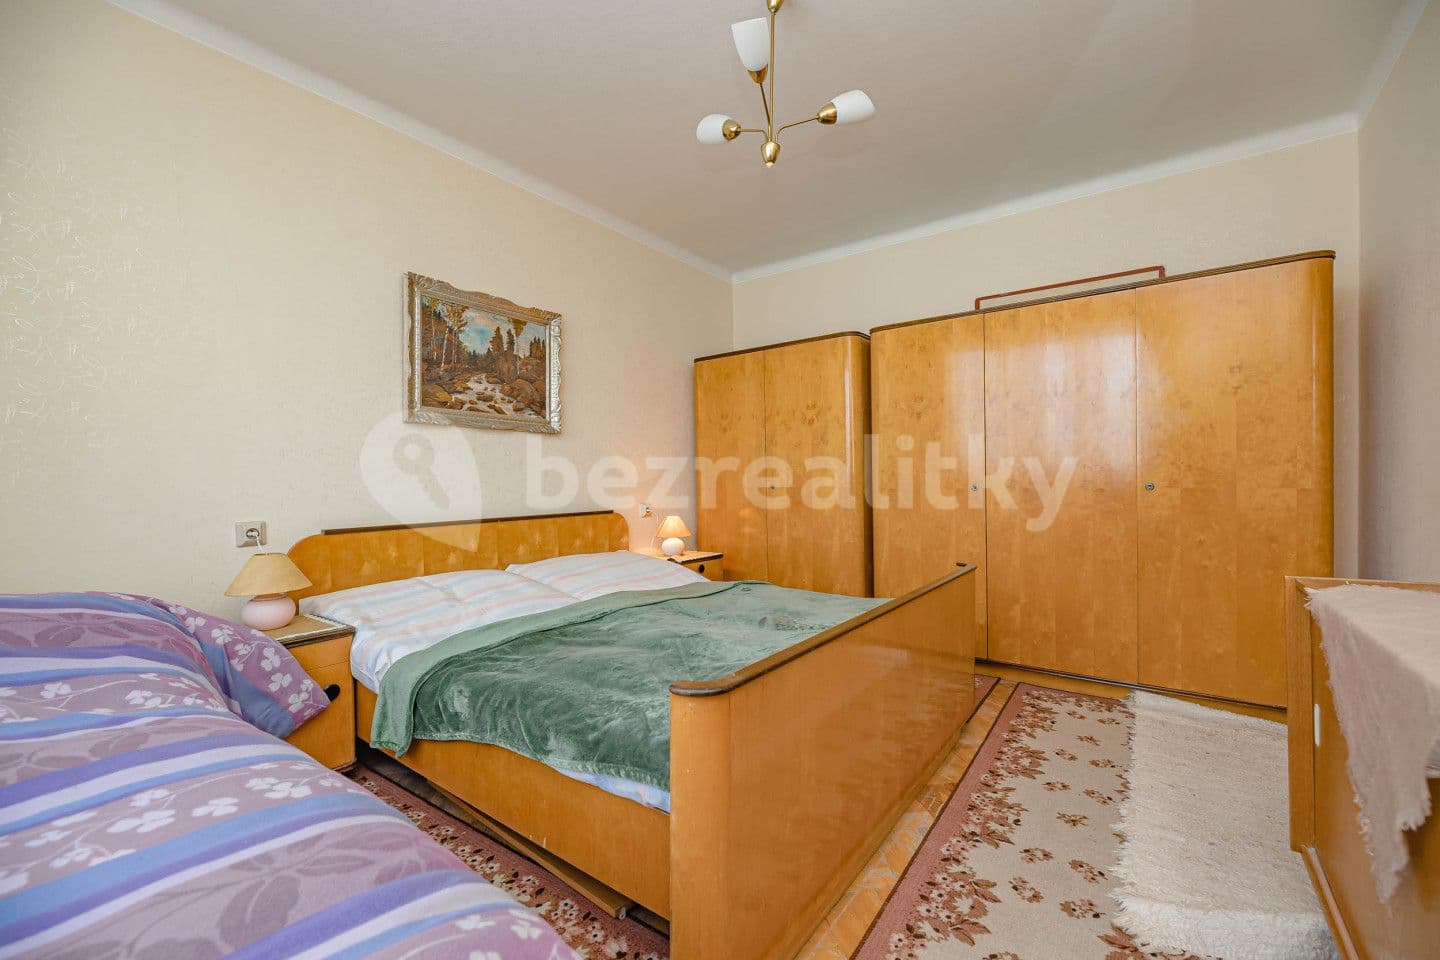 3 bedroom flat for sale, 65 m², Černčická, Nové Město nad Metují, Královéhradecký Region